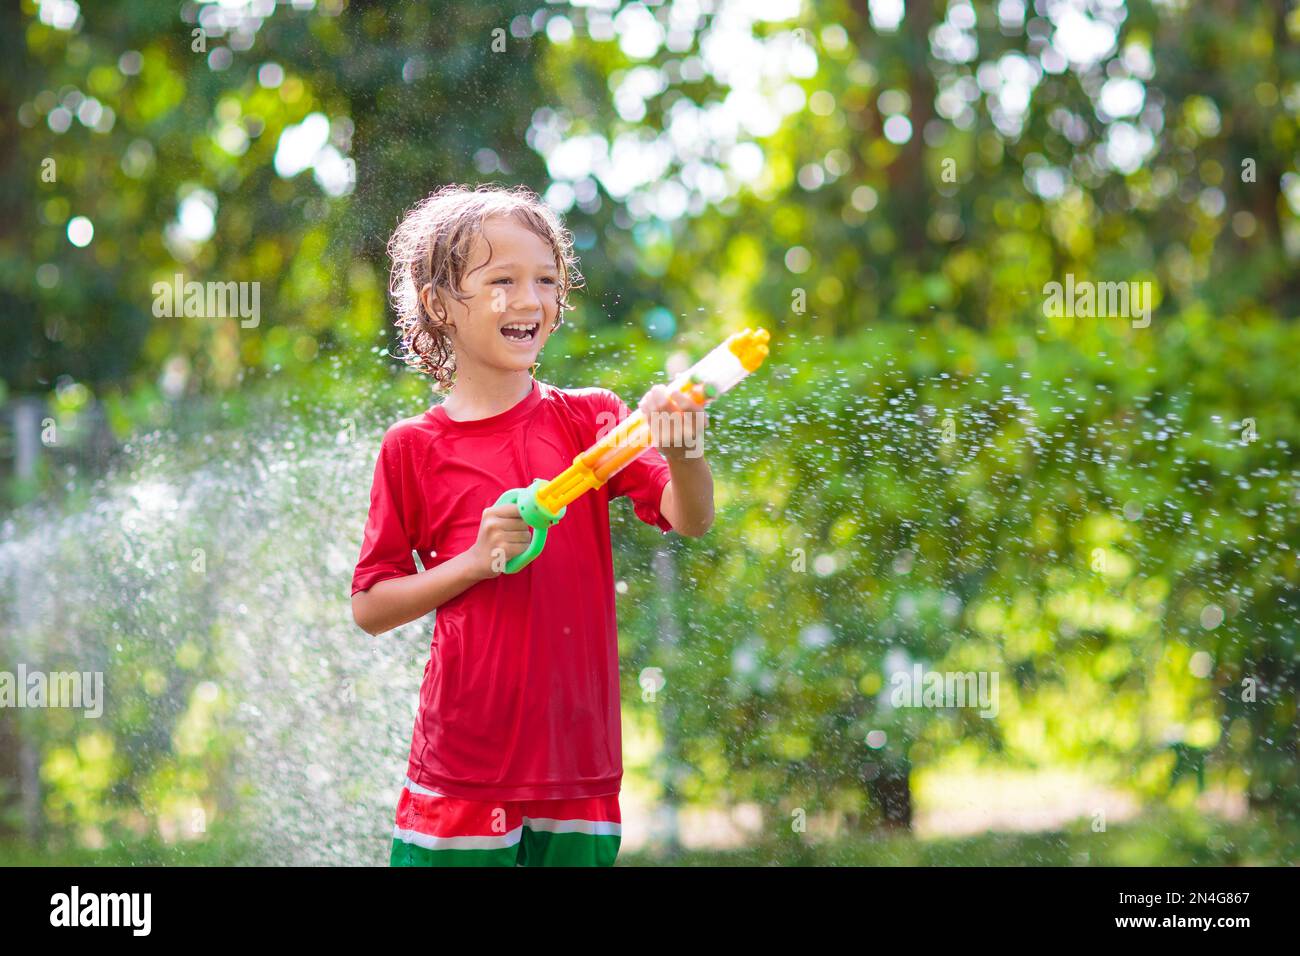 Les enfants jouent avec un tuyau d'arrosage. Jardin d'été, activités de  plein air pour les enfants. Garçon éclaboussant de l'eau par beau temps  chaud. Arrosage des plantes par les enfants dans l'arrière-cour